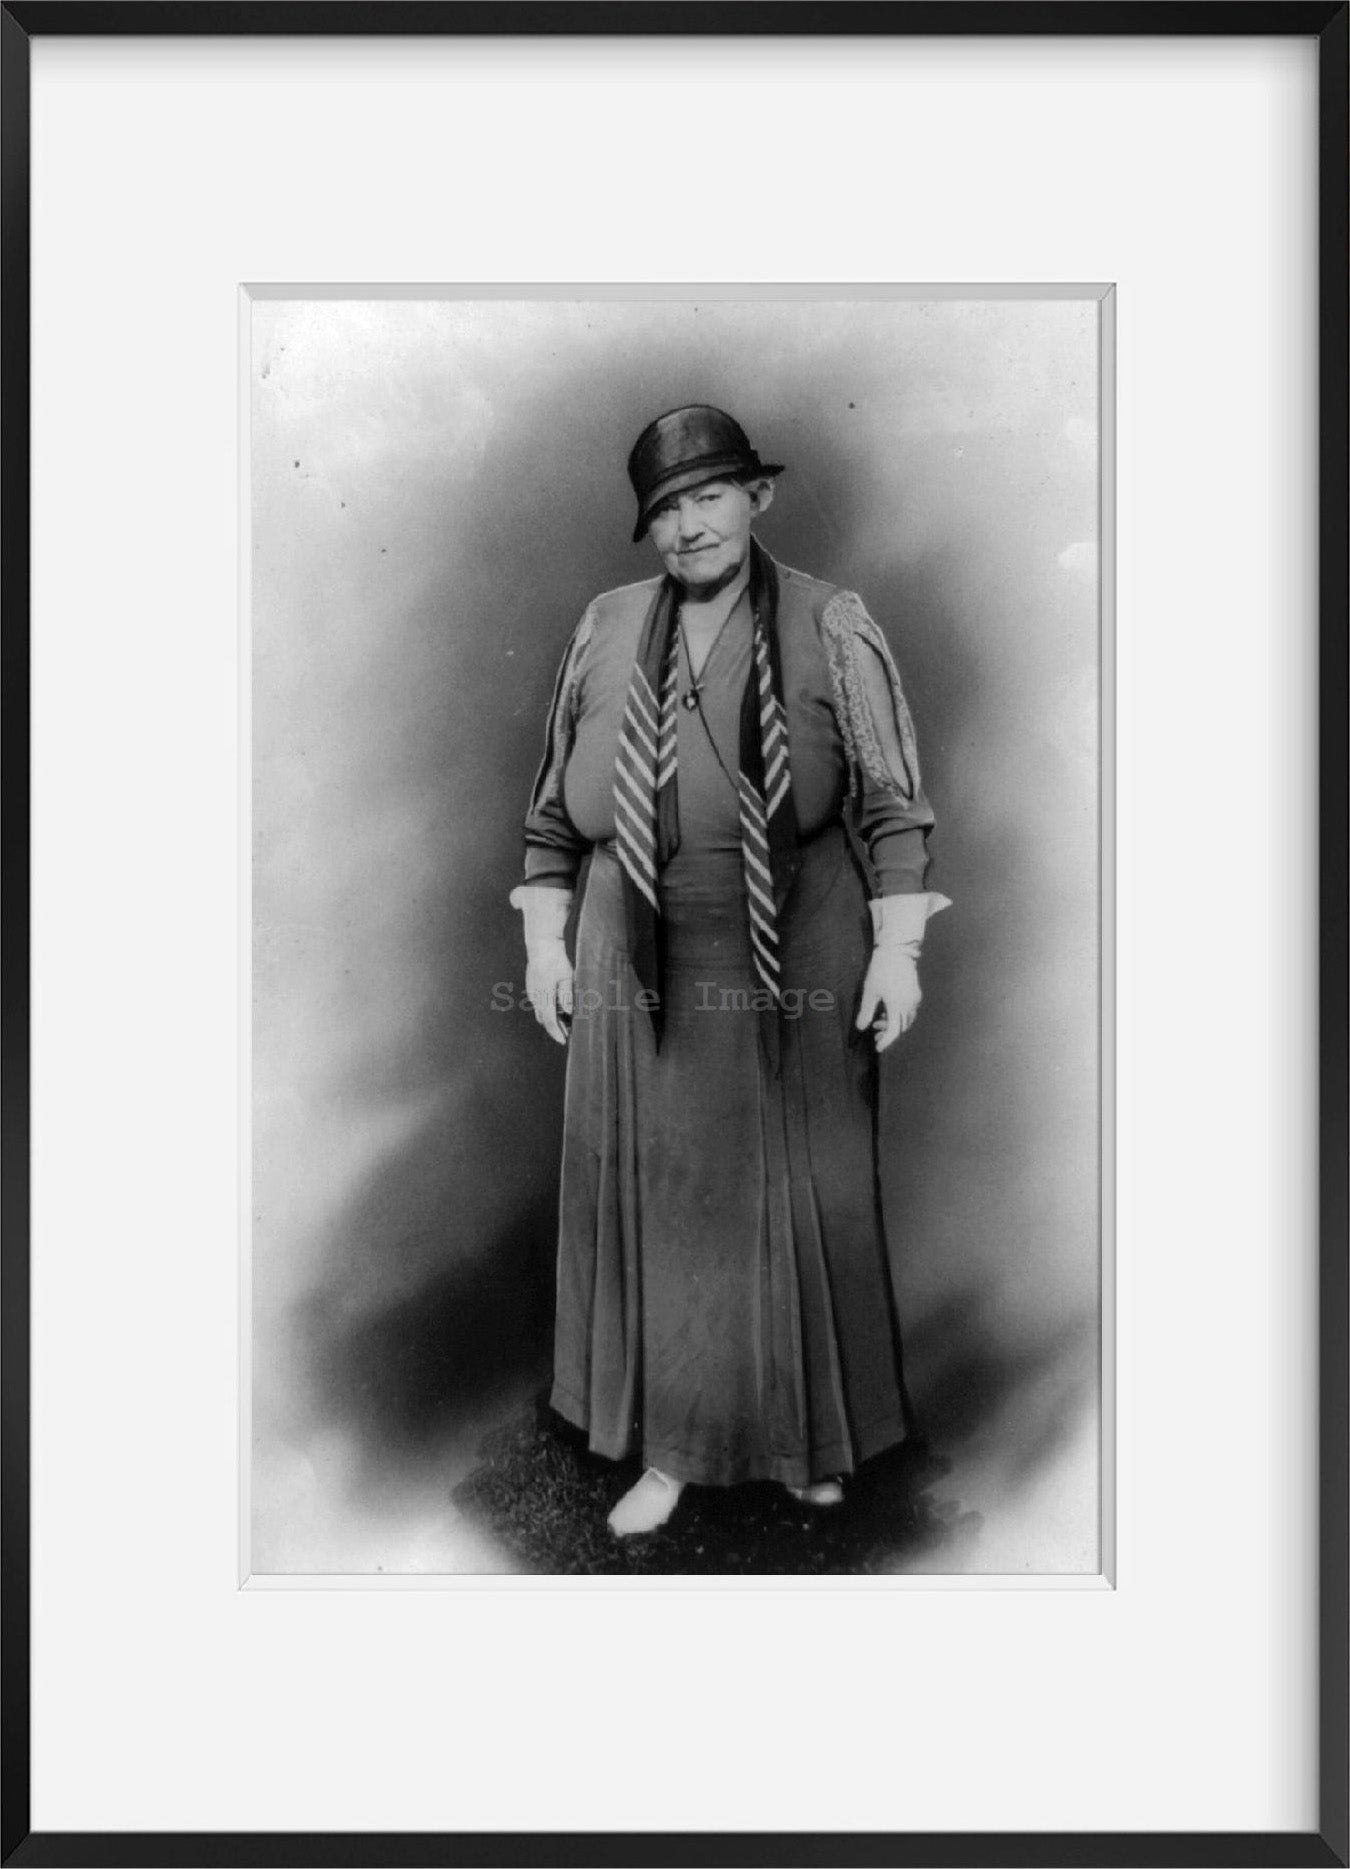 c1934 photograph of May Irwin (Mrs. Kurt Eisfeldt) Summary: Full lgth., standing